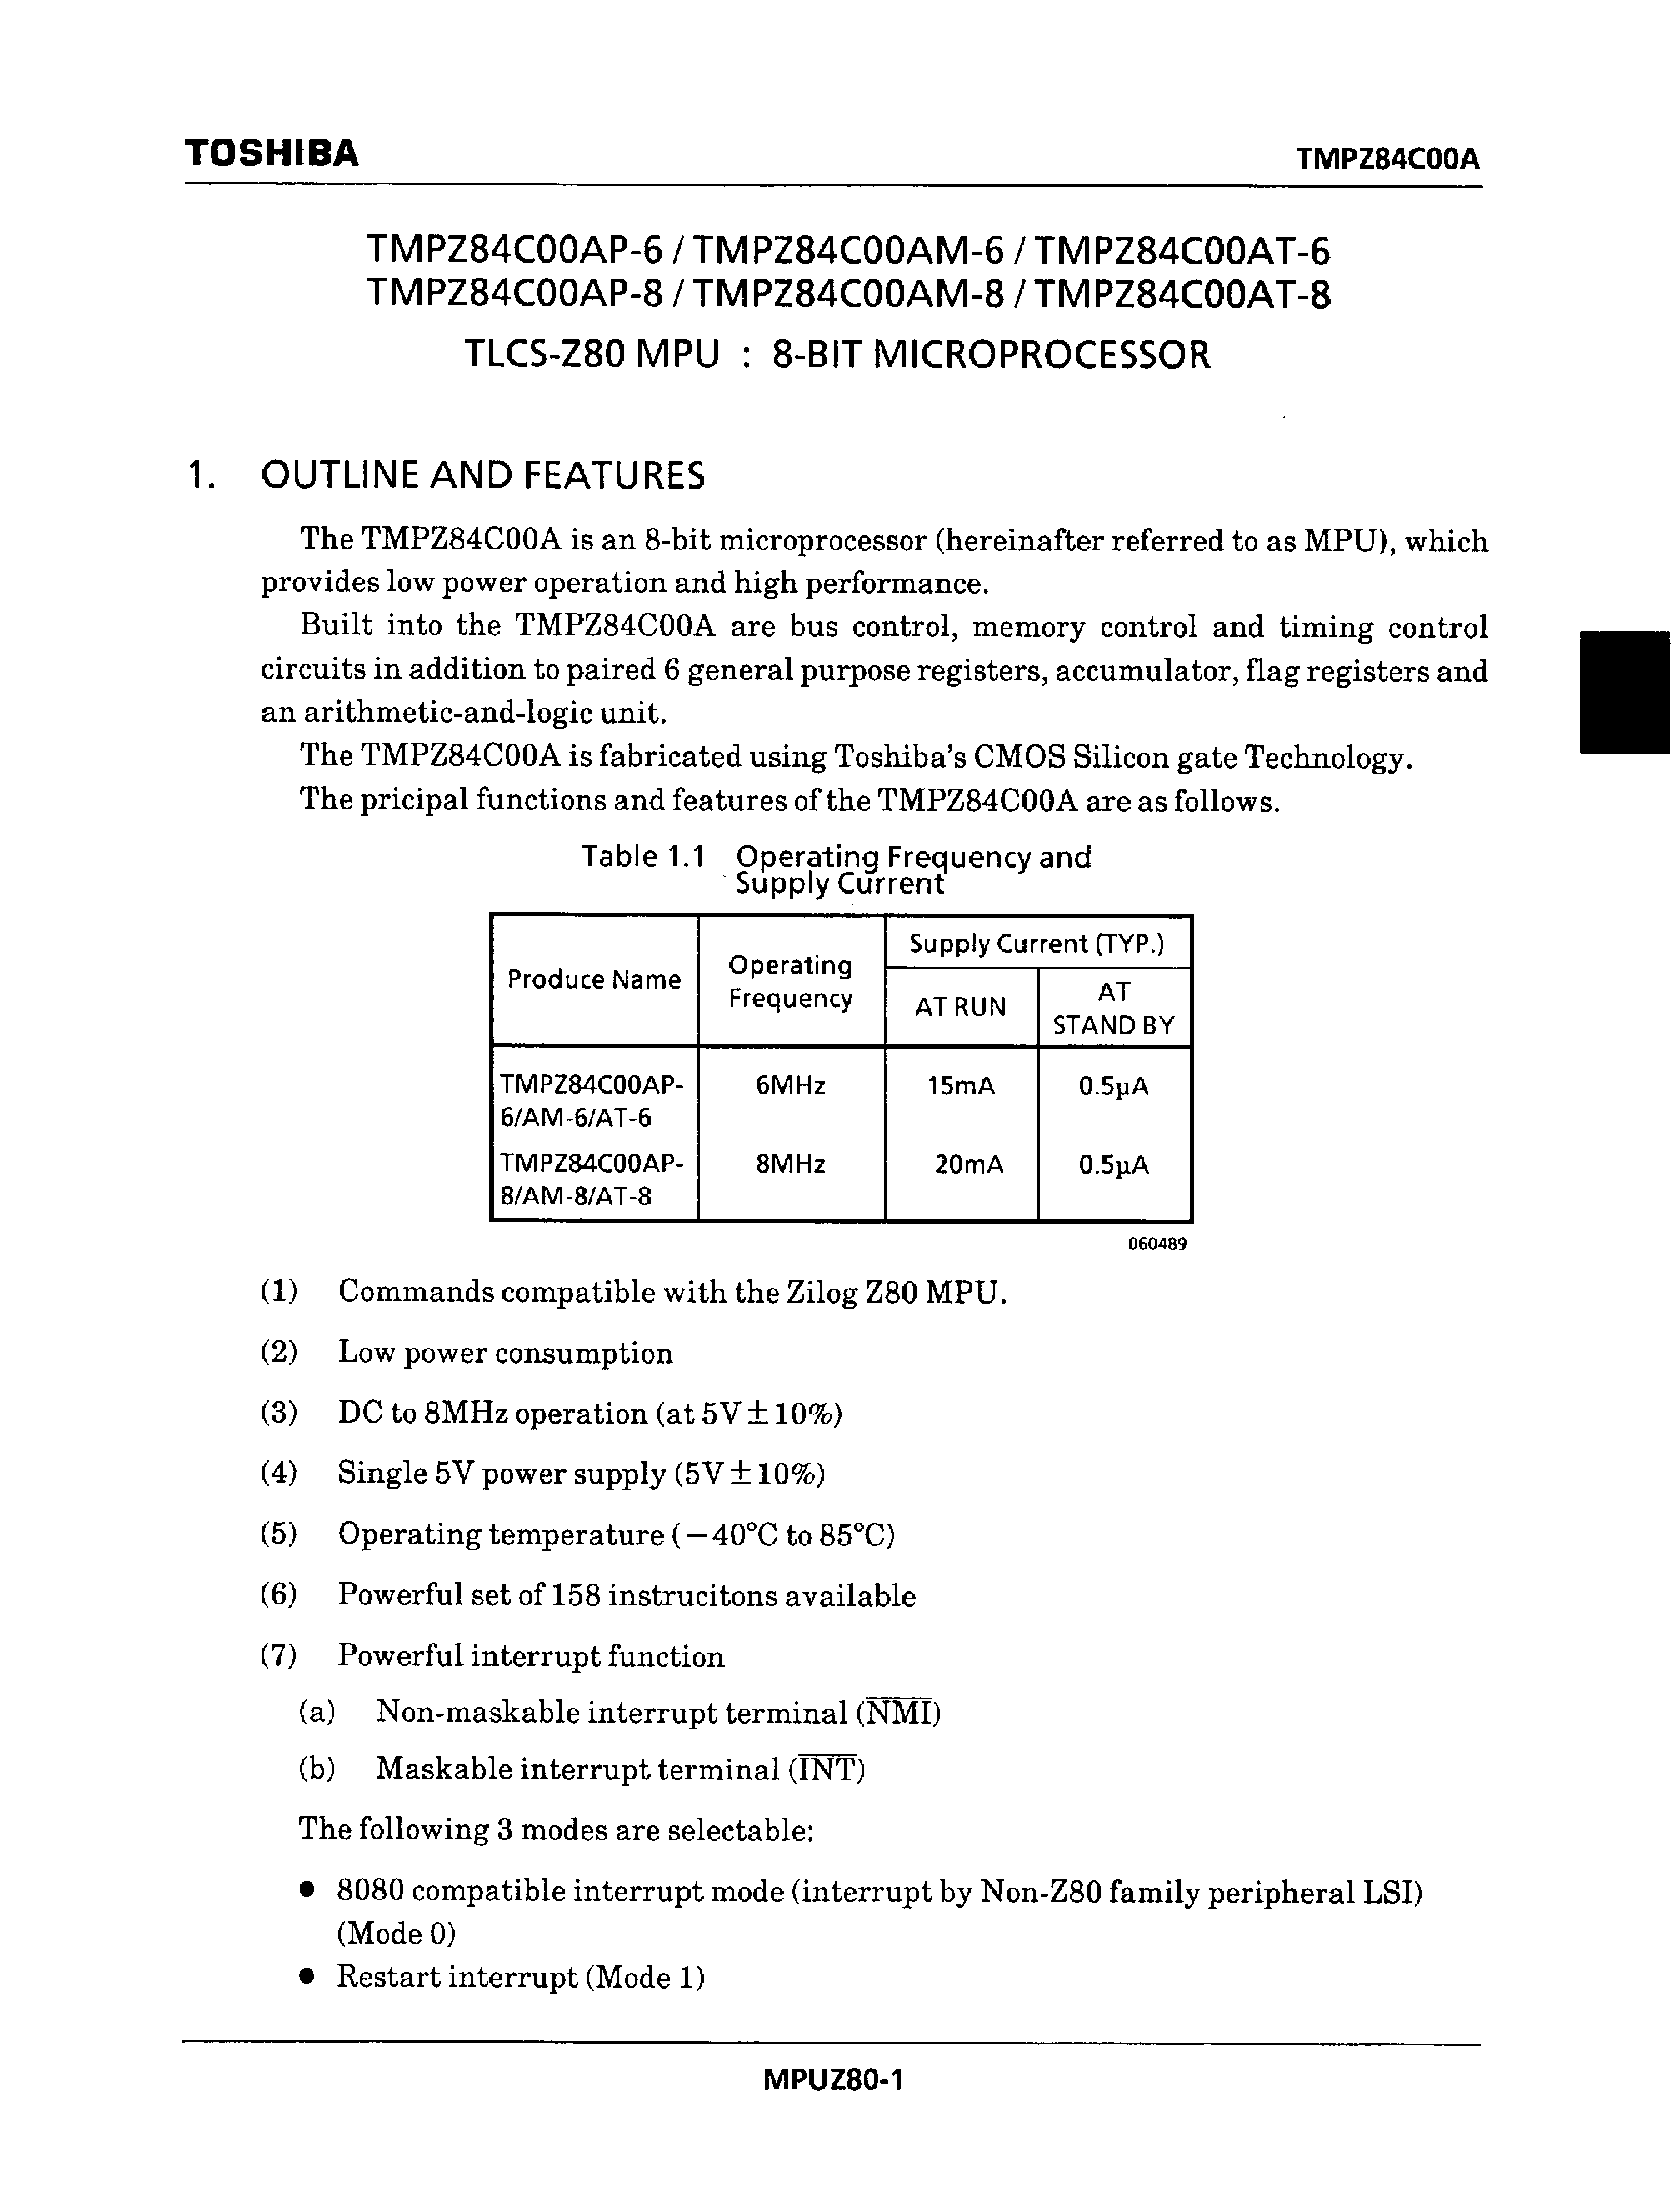 Datasheet TMPZ84C00AT-8 - TLCS-Z80 MPU : 8-BIT MICROPROCESSOR page 1